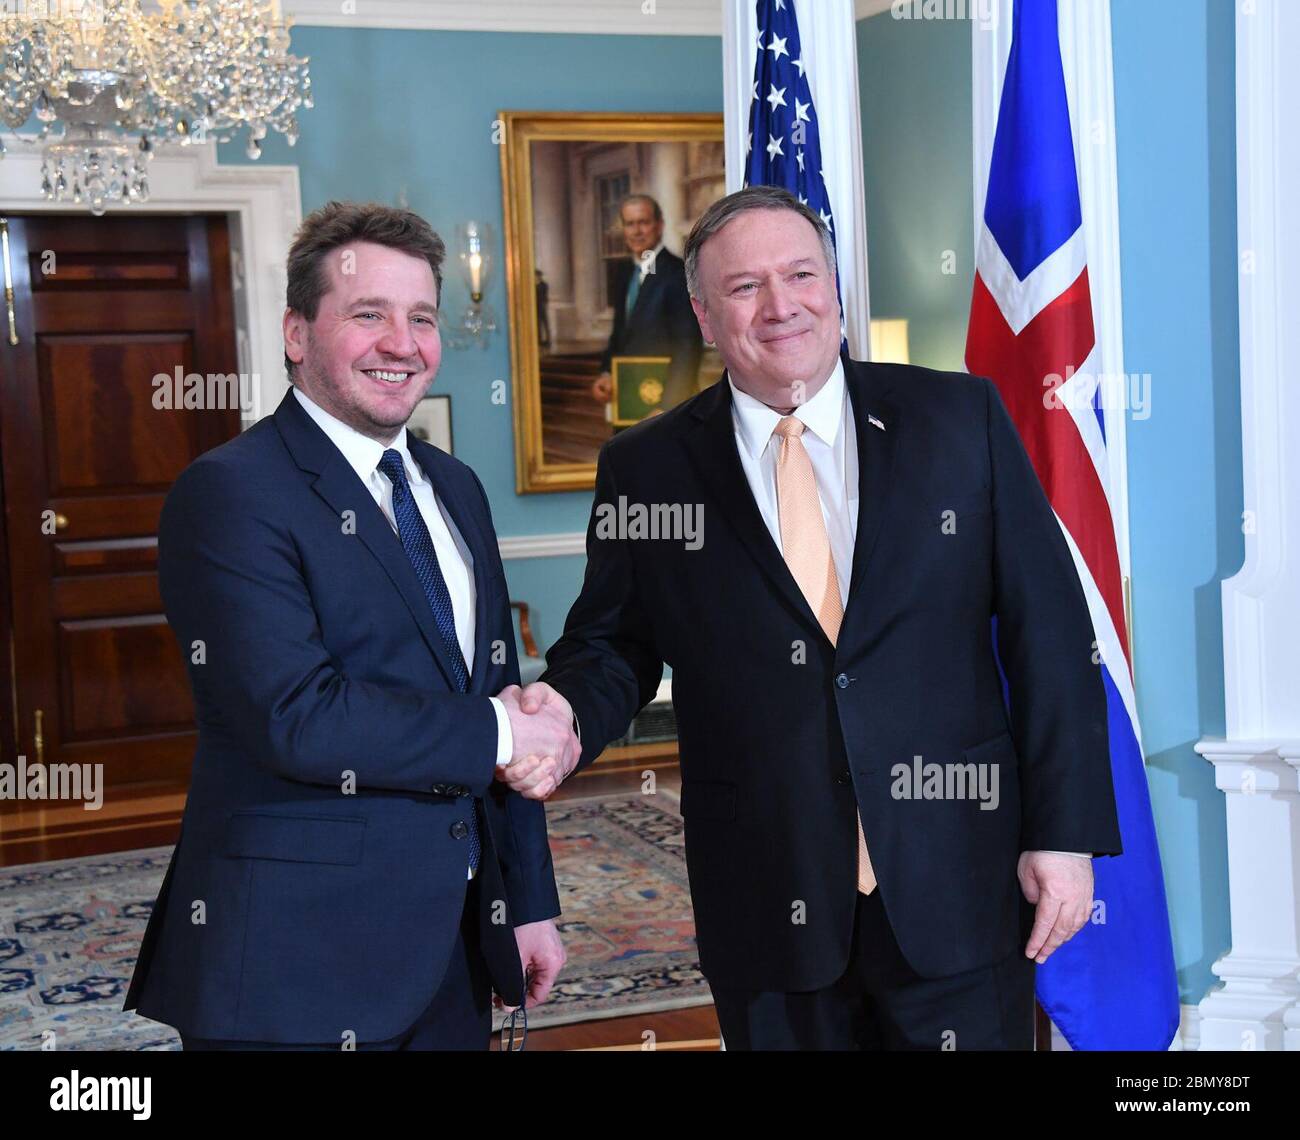 Le secrétaire Pompeo rencontre le ministre islandais des Affaires étrangères, M. Thordarson le secrétaire d'État américain, M. Michael Pompeo, rencontre le ministre islandais des Affaires étrangères, M. Gudlaugur Thor Thordarson, au ministère d'État, le 7 janvier 2019. Banque D'Images